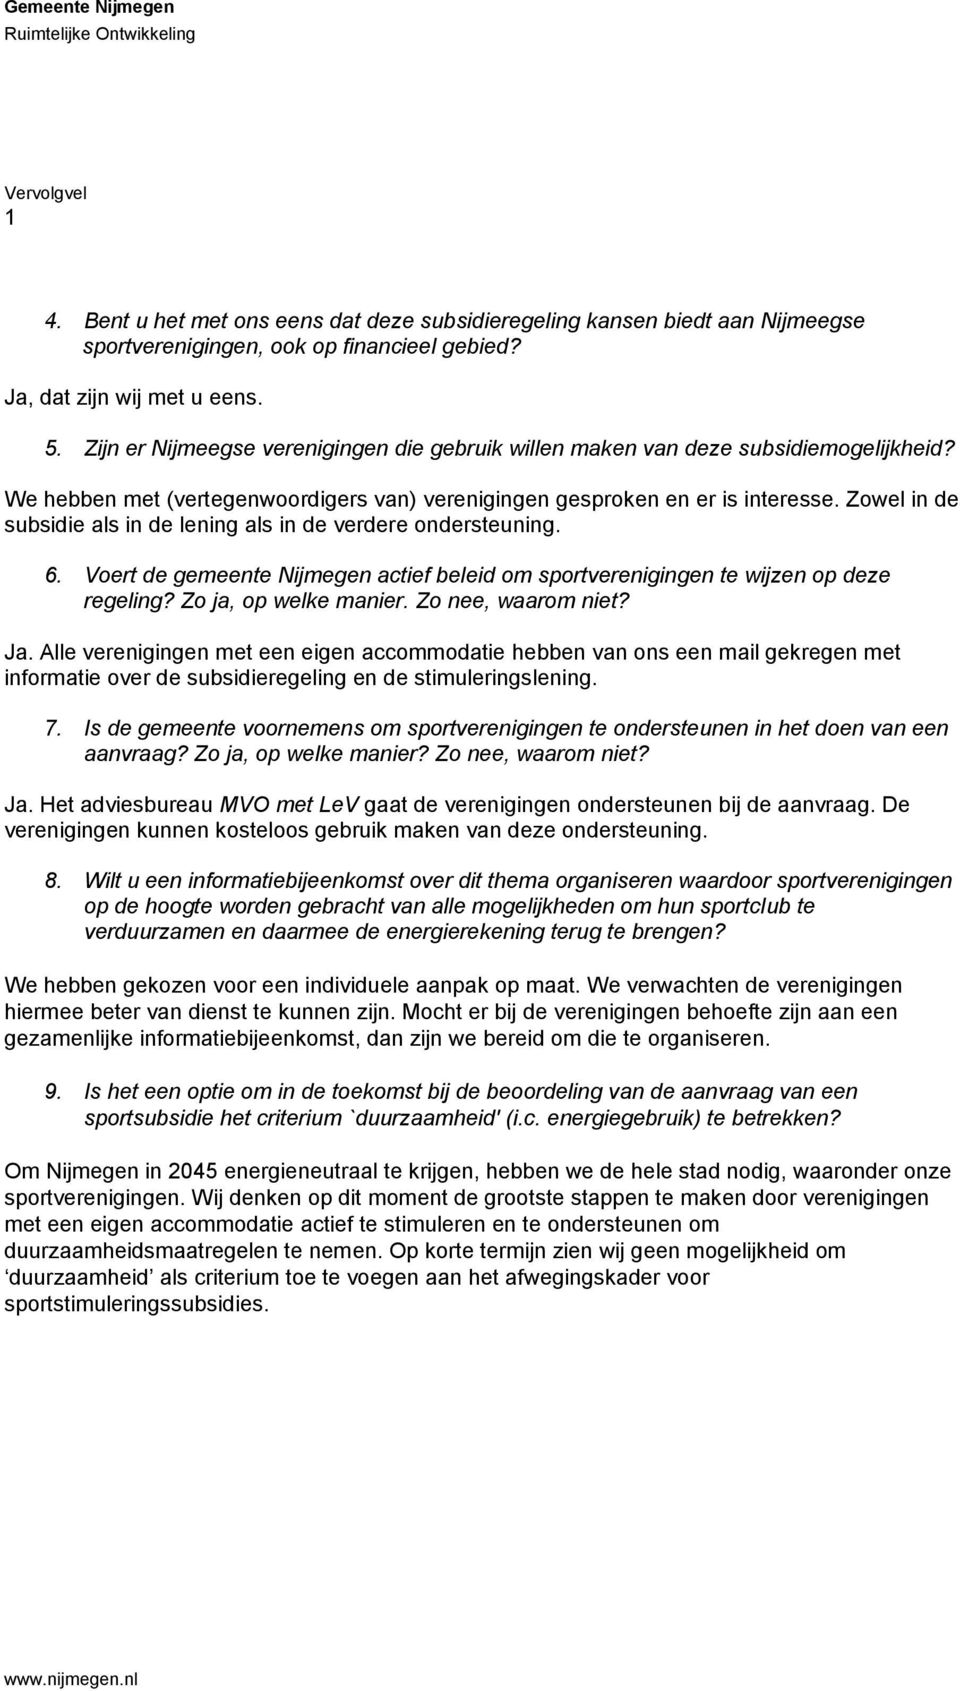 Zowel in de subsidie als in de lening als in de verdere ondersteuning. 6. Voert de gemeente Nijmegen actief beleid om sportverenigingen te wijzen op deze regeling? Zo ja, op welke manier.